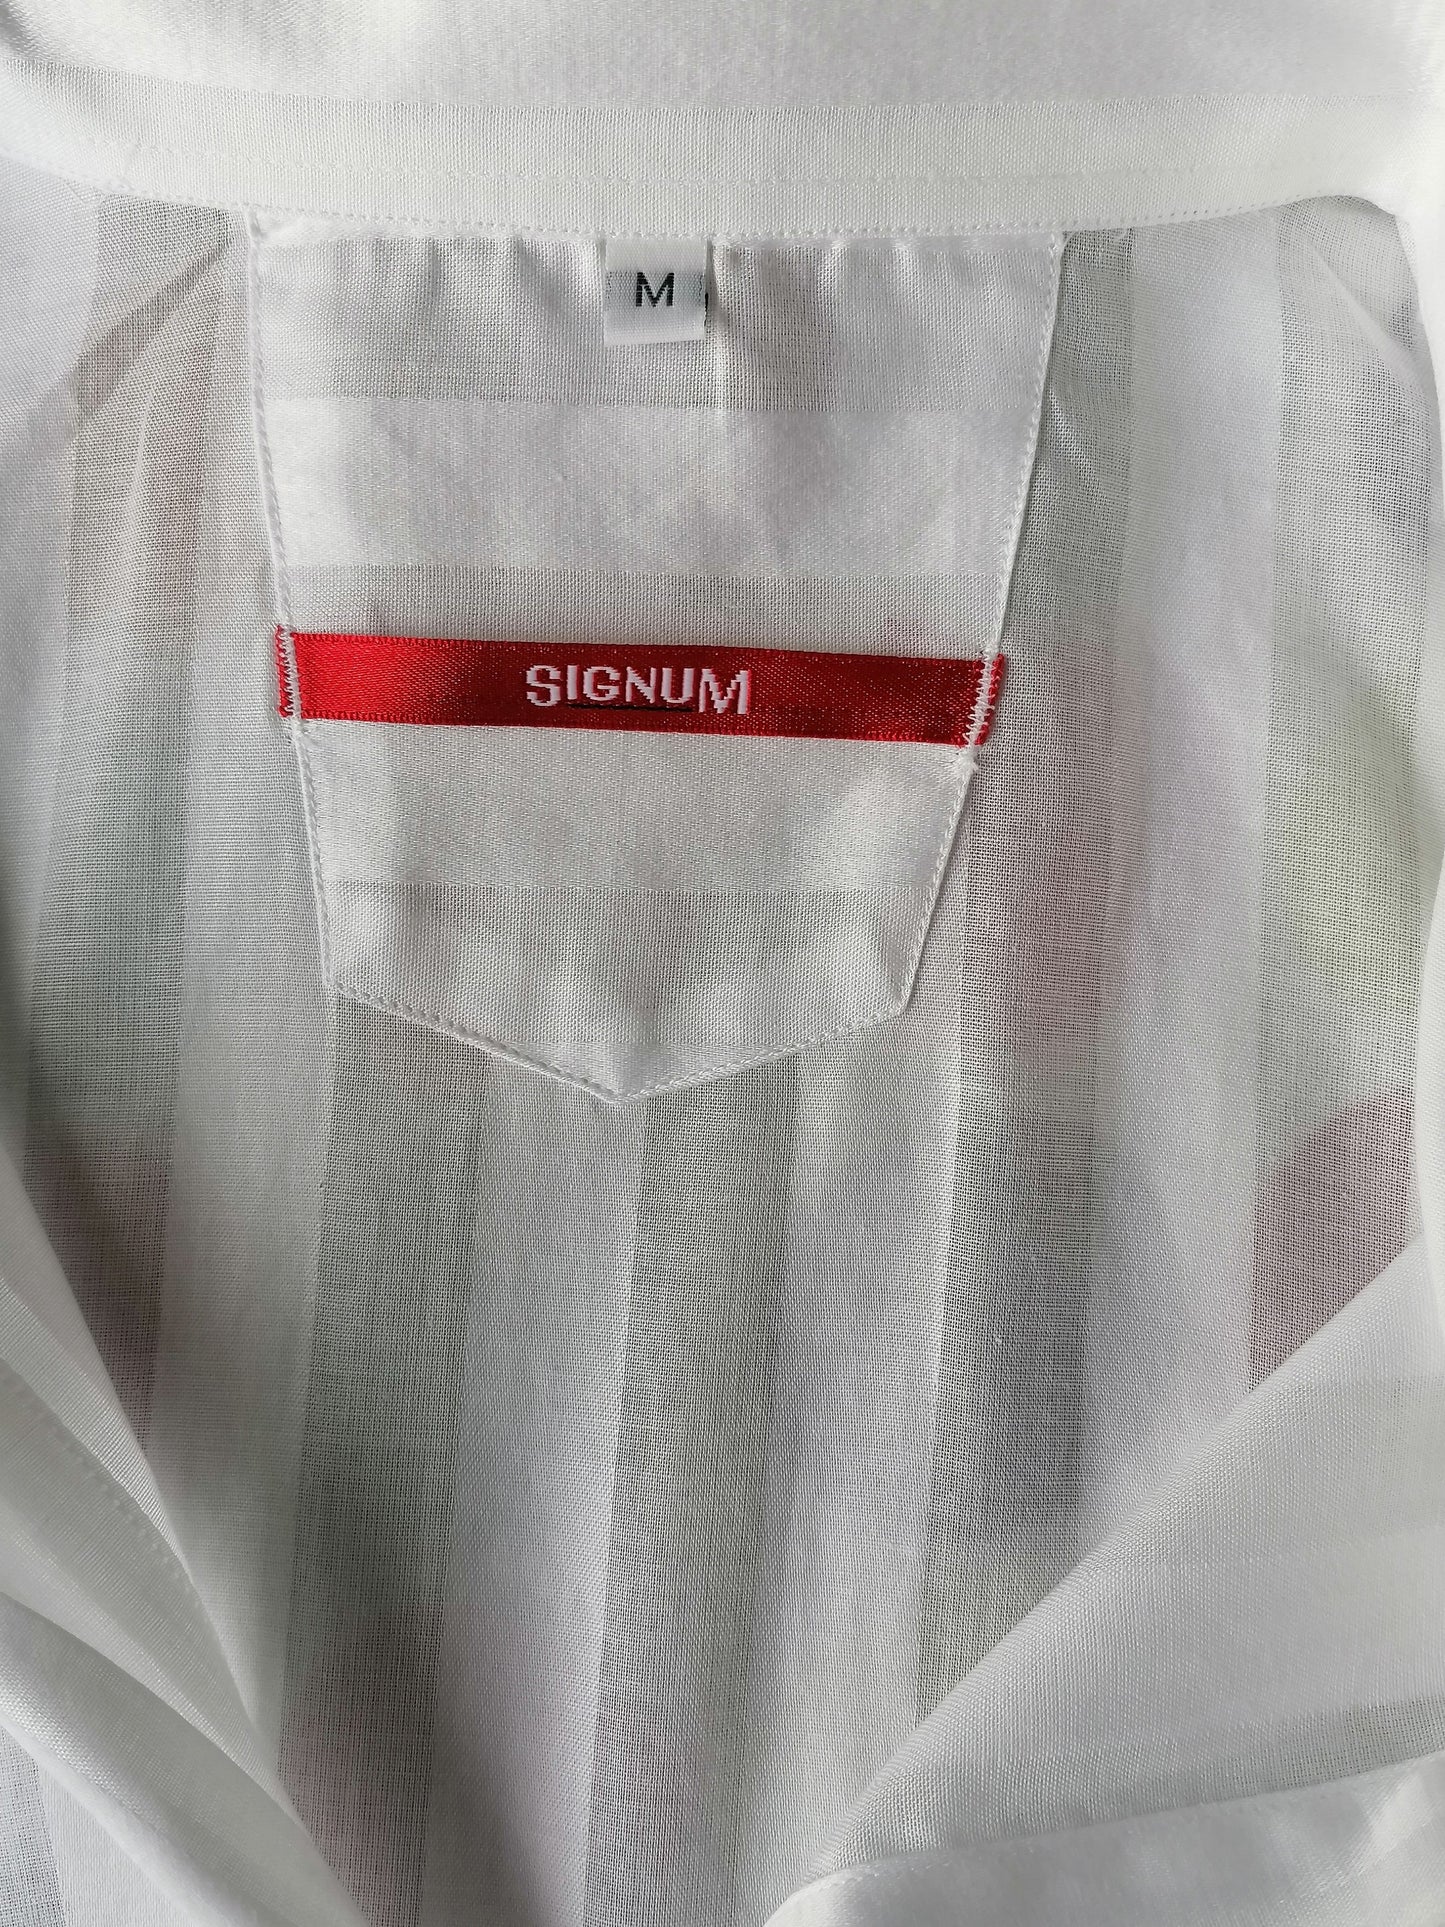 Camisa de signum vintage manga corta y botones más grandes. Motivo de rayas blancas. Tamaño xl.